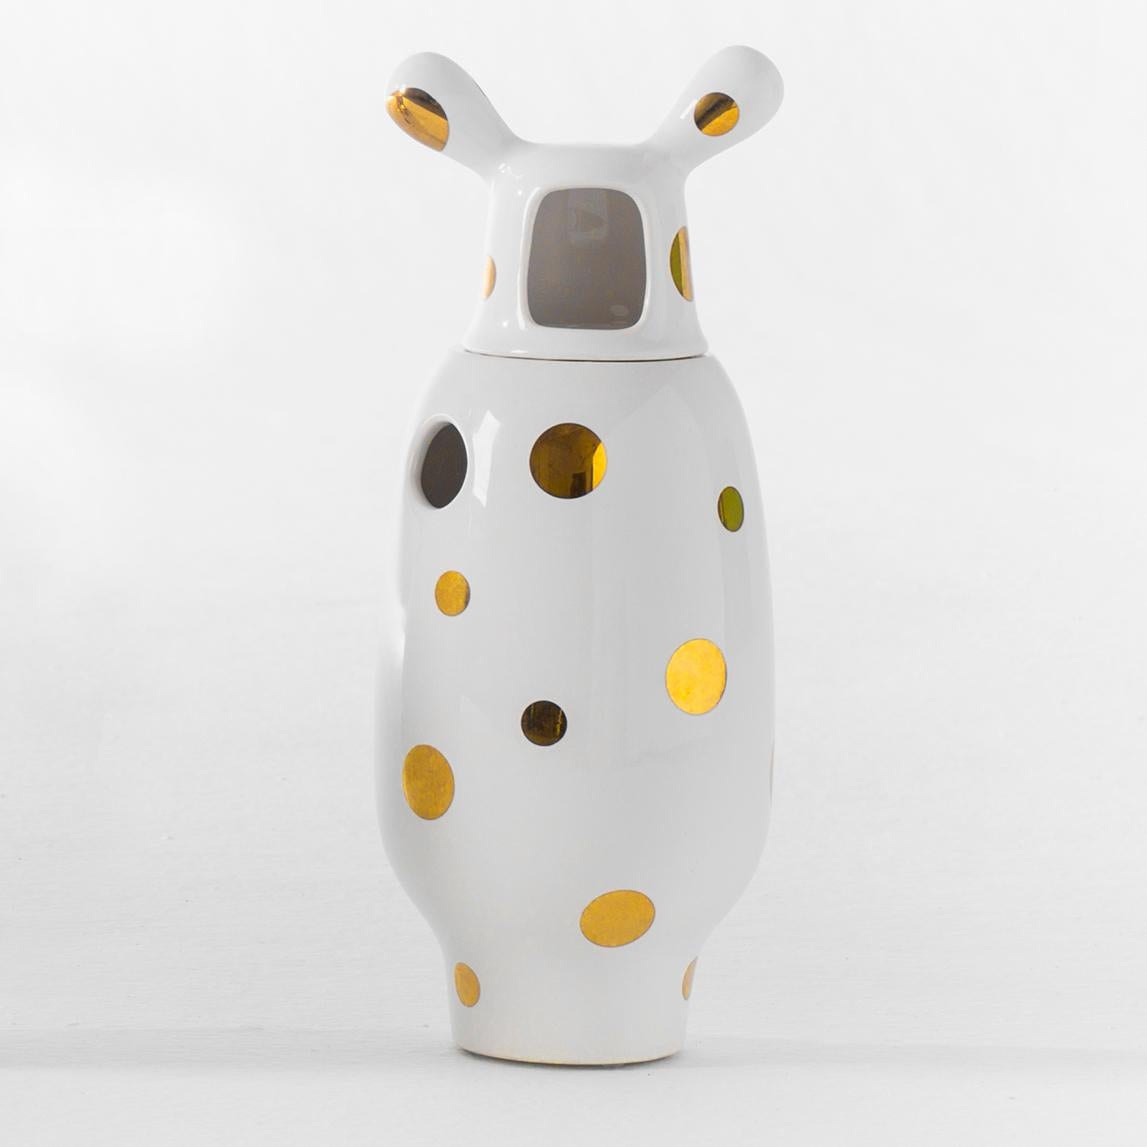 Spanish Jaime Hayon Contemporary Glazed Stoneware 'Showtime 10' Vase Number 2